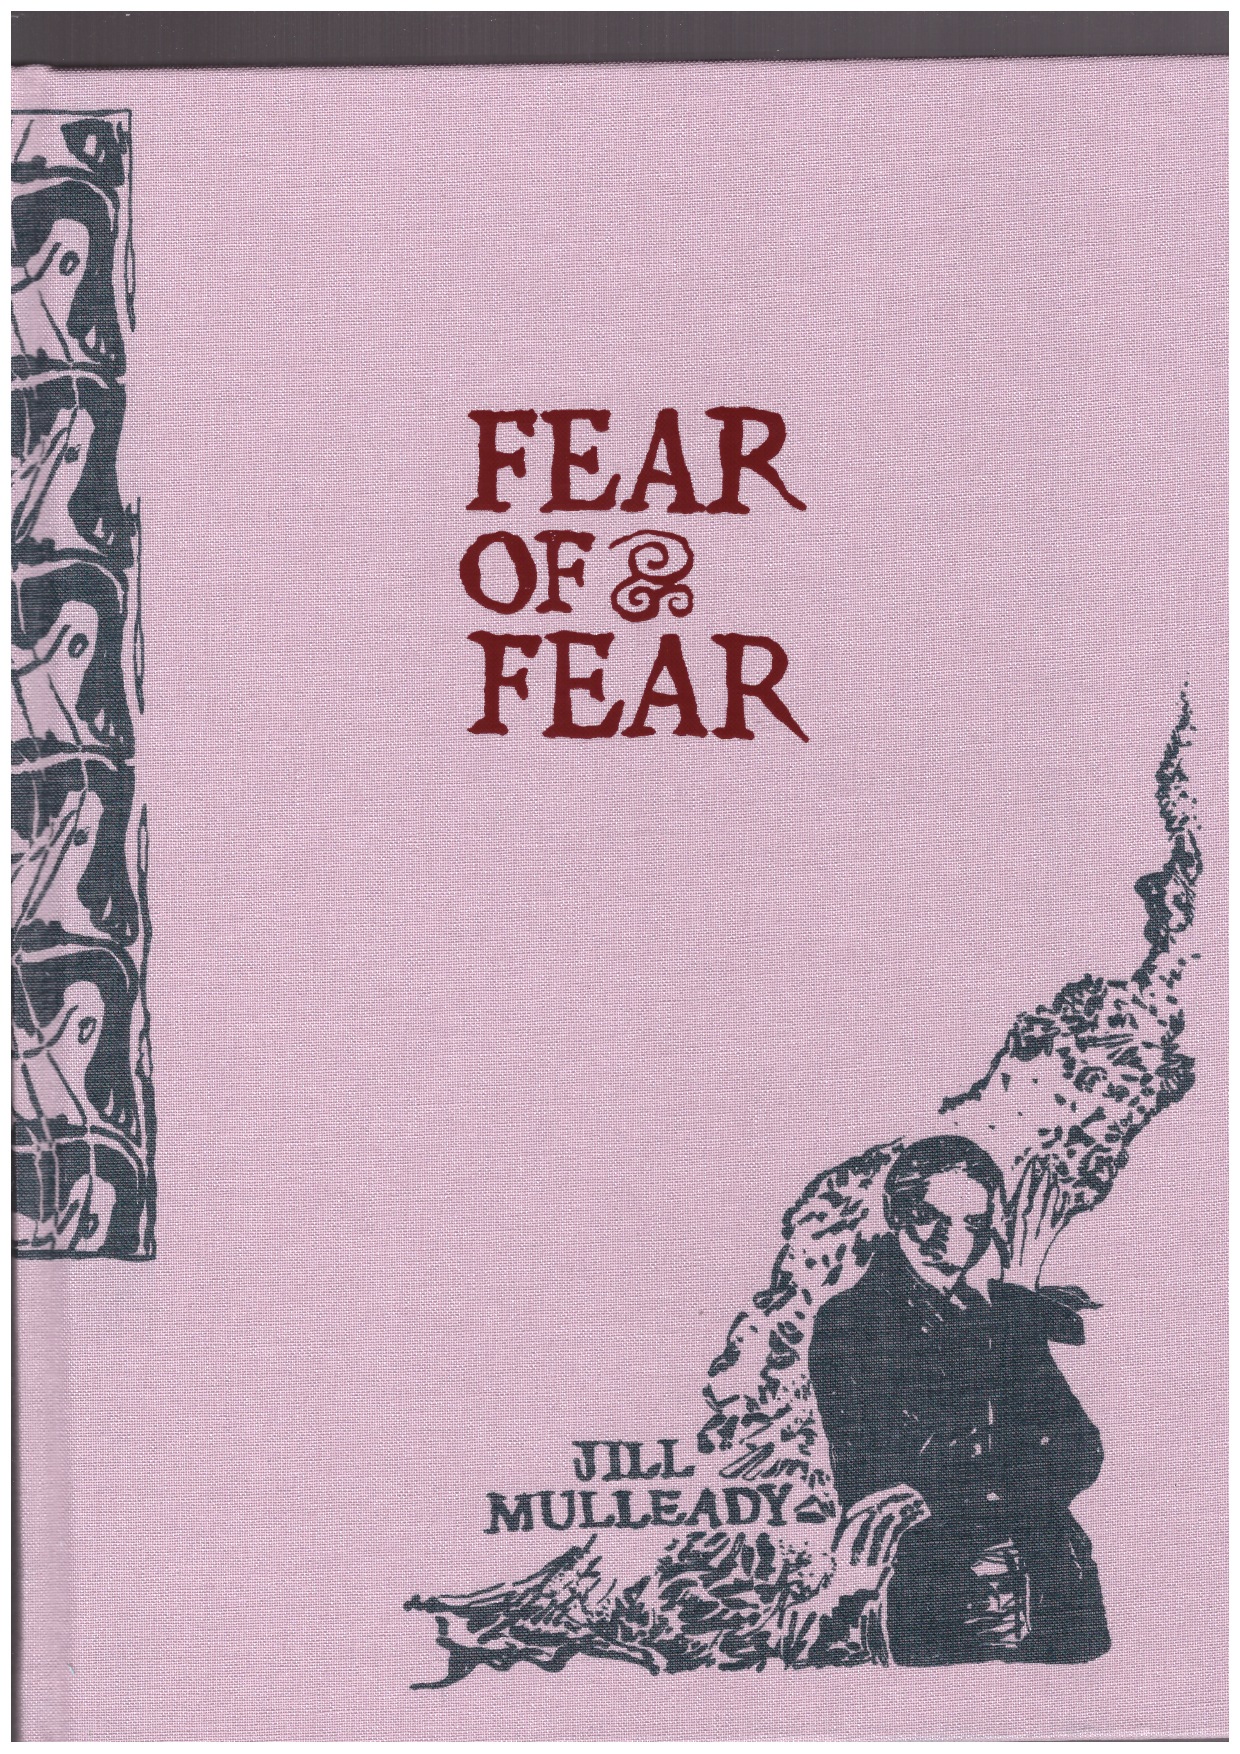 MULLEADY, Jill; KNOLL, Velérie (ed.) - Jill Mulleady: Fear of Fear